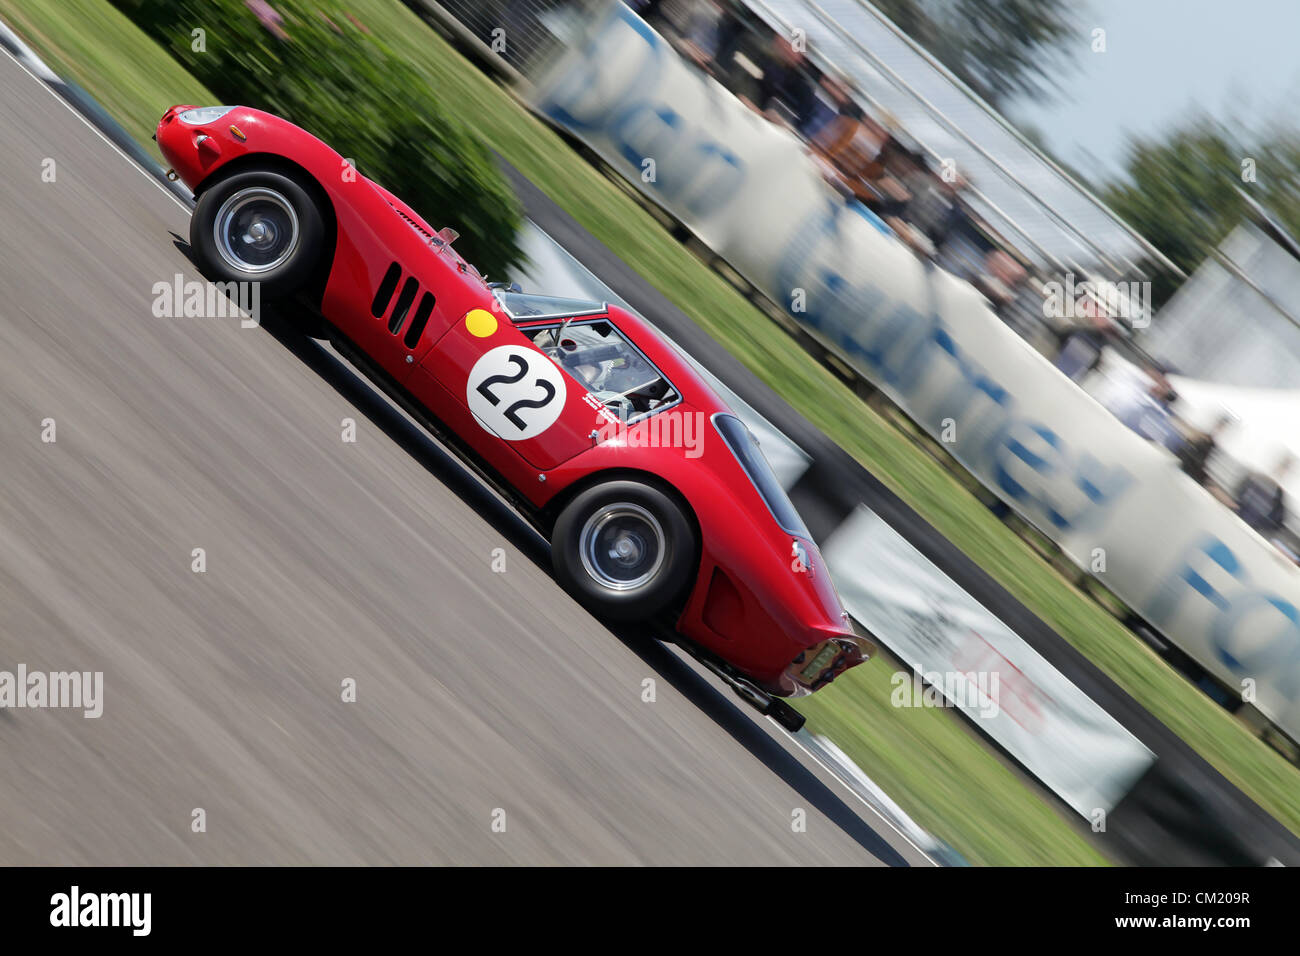 Goodwood Estate, Chichester, Royaume-Uni. 15 septembre 2012. Jean Alesi au volant d'une Ferrari 250 GTO 1962 RAC au cours de la célébration de la platine. La renaissance est une étape magique dans le temps', présentant un mélange de voitures et de l'aviation des années 40, 50 et 60 et est l'un des plus populaires courses automobiles historiques dans le monde. Pour plus de renseignements, veuillez visiter www.goodwood.co.uk/renaissance. Banque D'Images